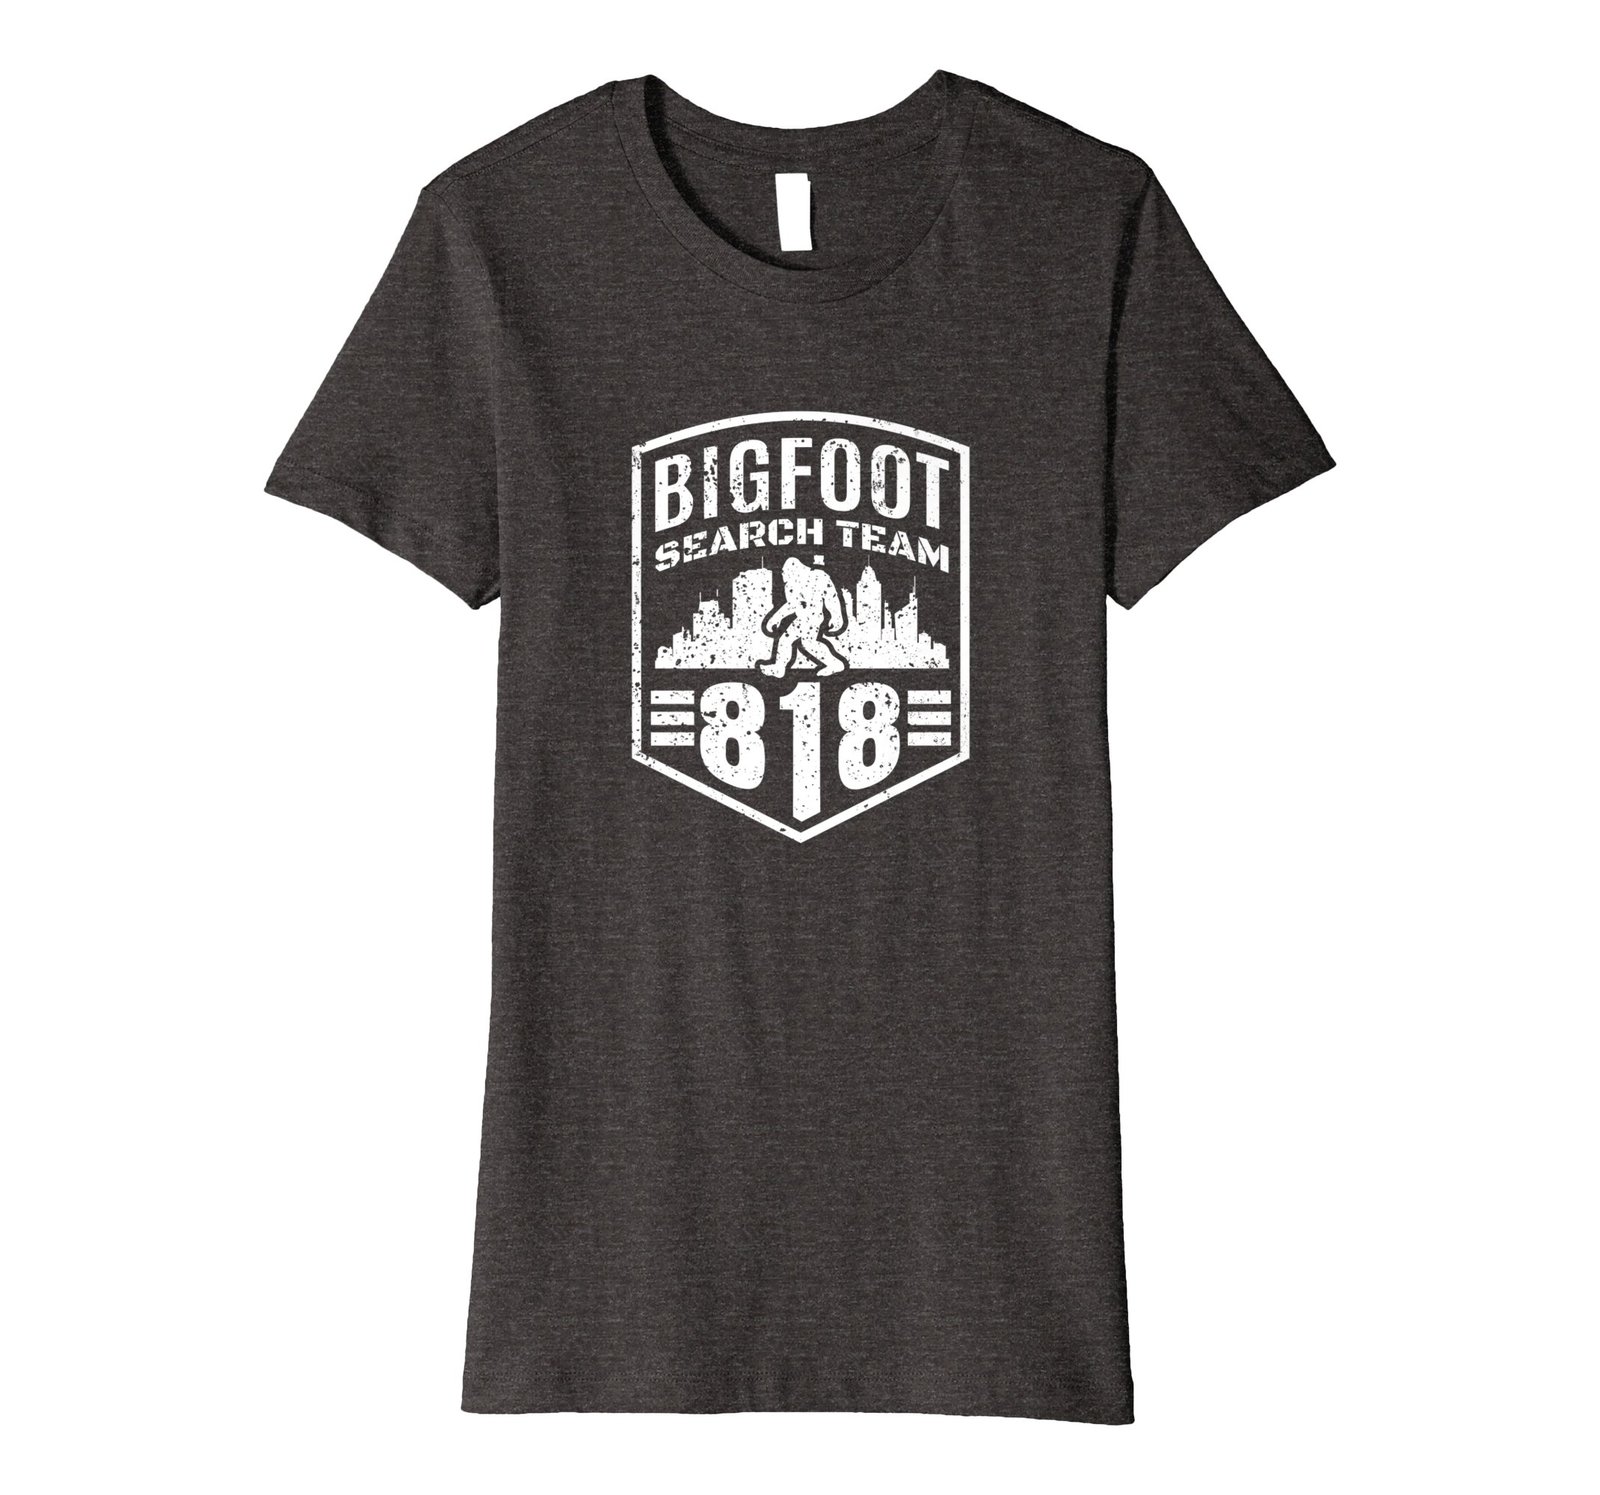 Funny Shirts - Bigfoot California Search Team Shirt Area Code 818 Wowen